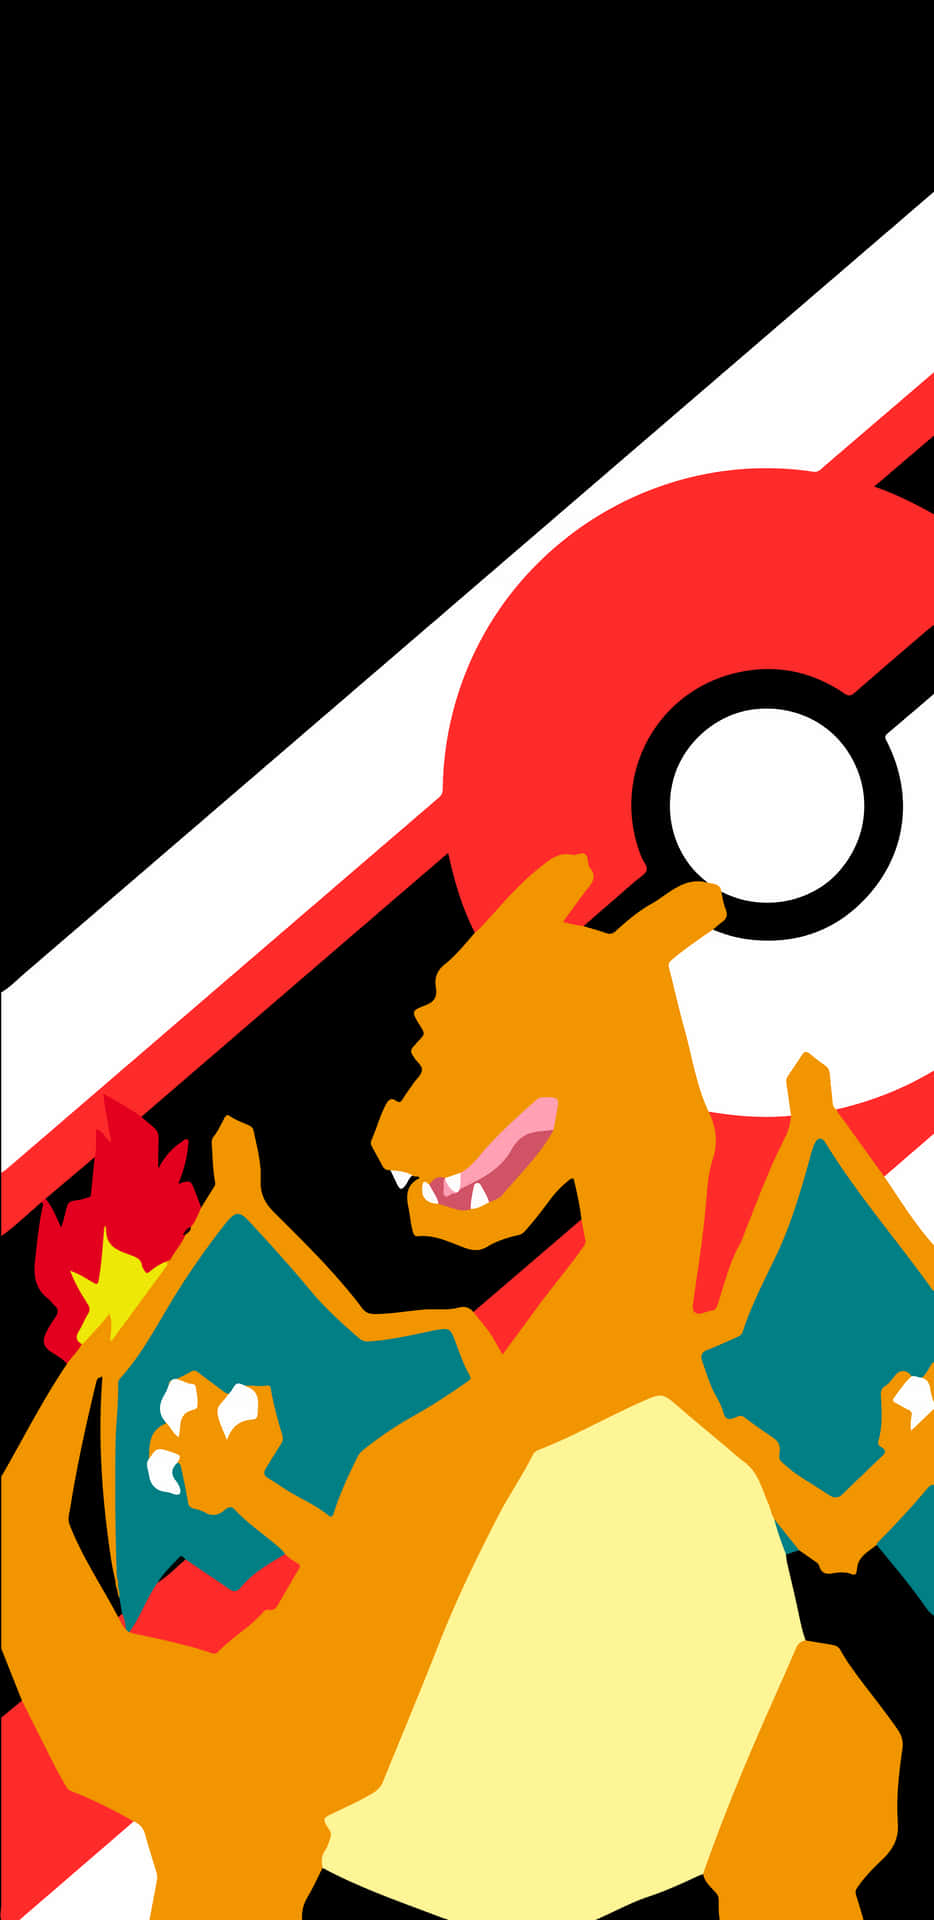 Denne legandariske Fire-Type Pokemon er Charizard Wallpaper